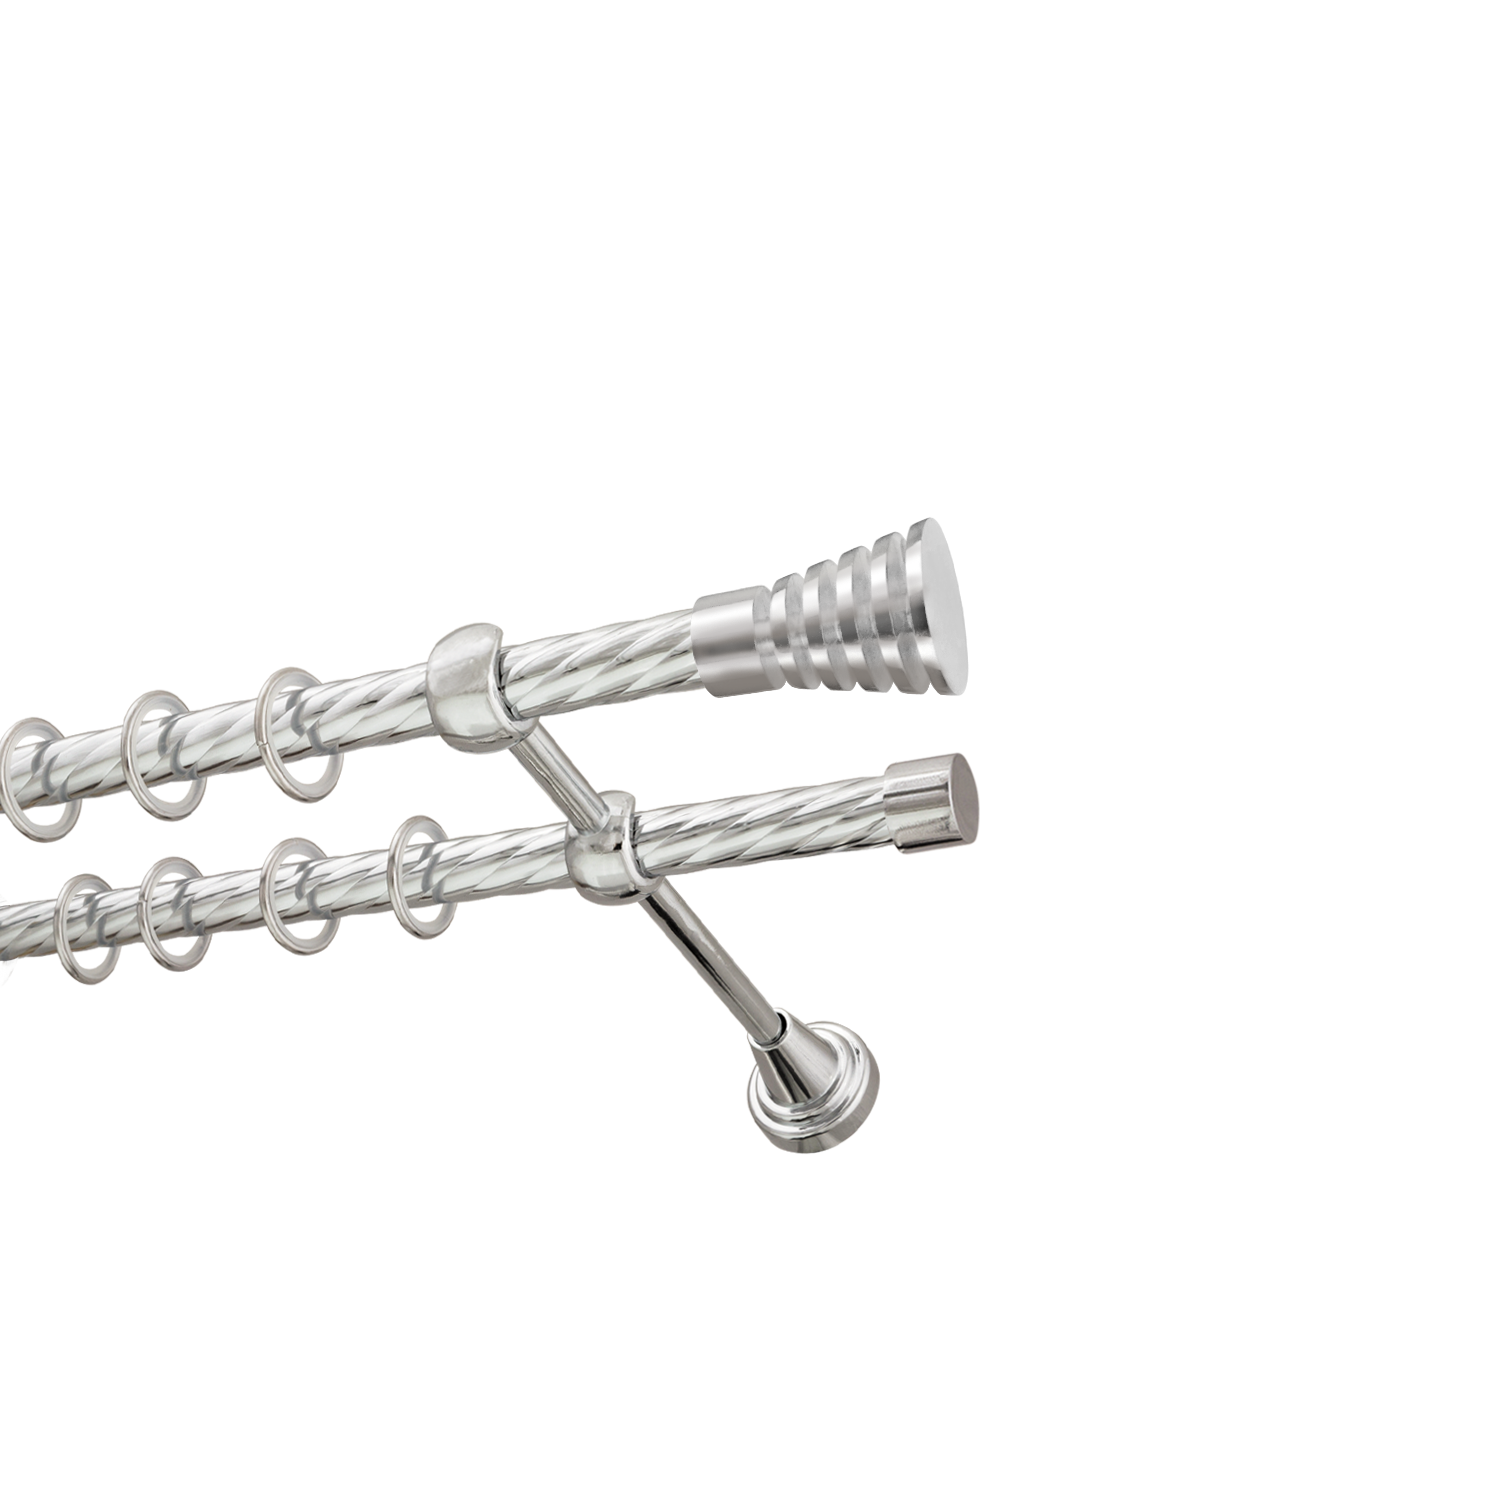 Металлический карниз для штор Верона, двухрядный 16/16 мм, серебро, витая штанга, длина 140 см - фото Wikidecor.ru